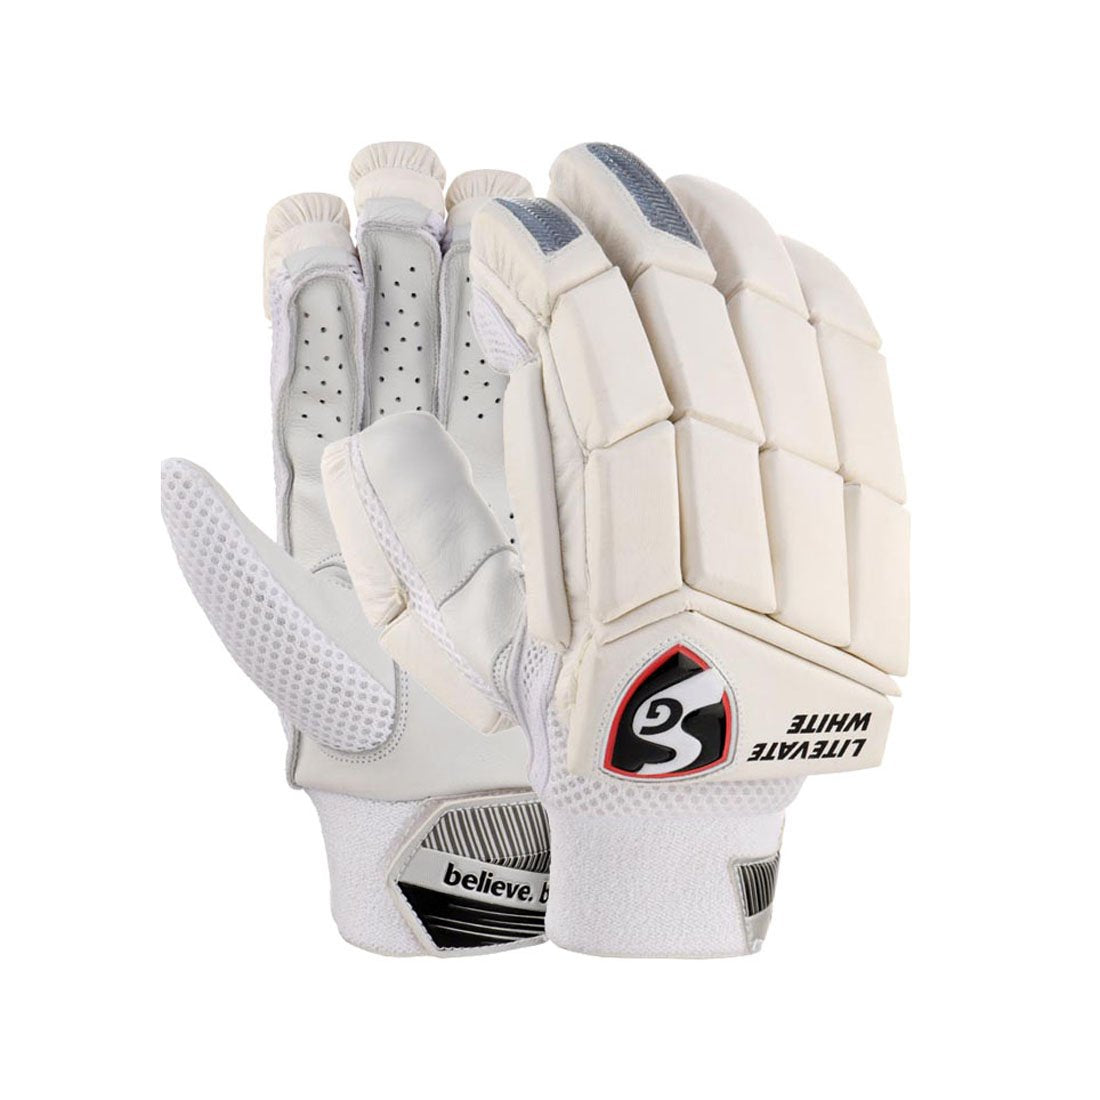 SG Litevate White Junior / Youth Cricket Gloves